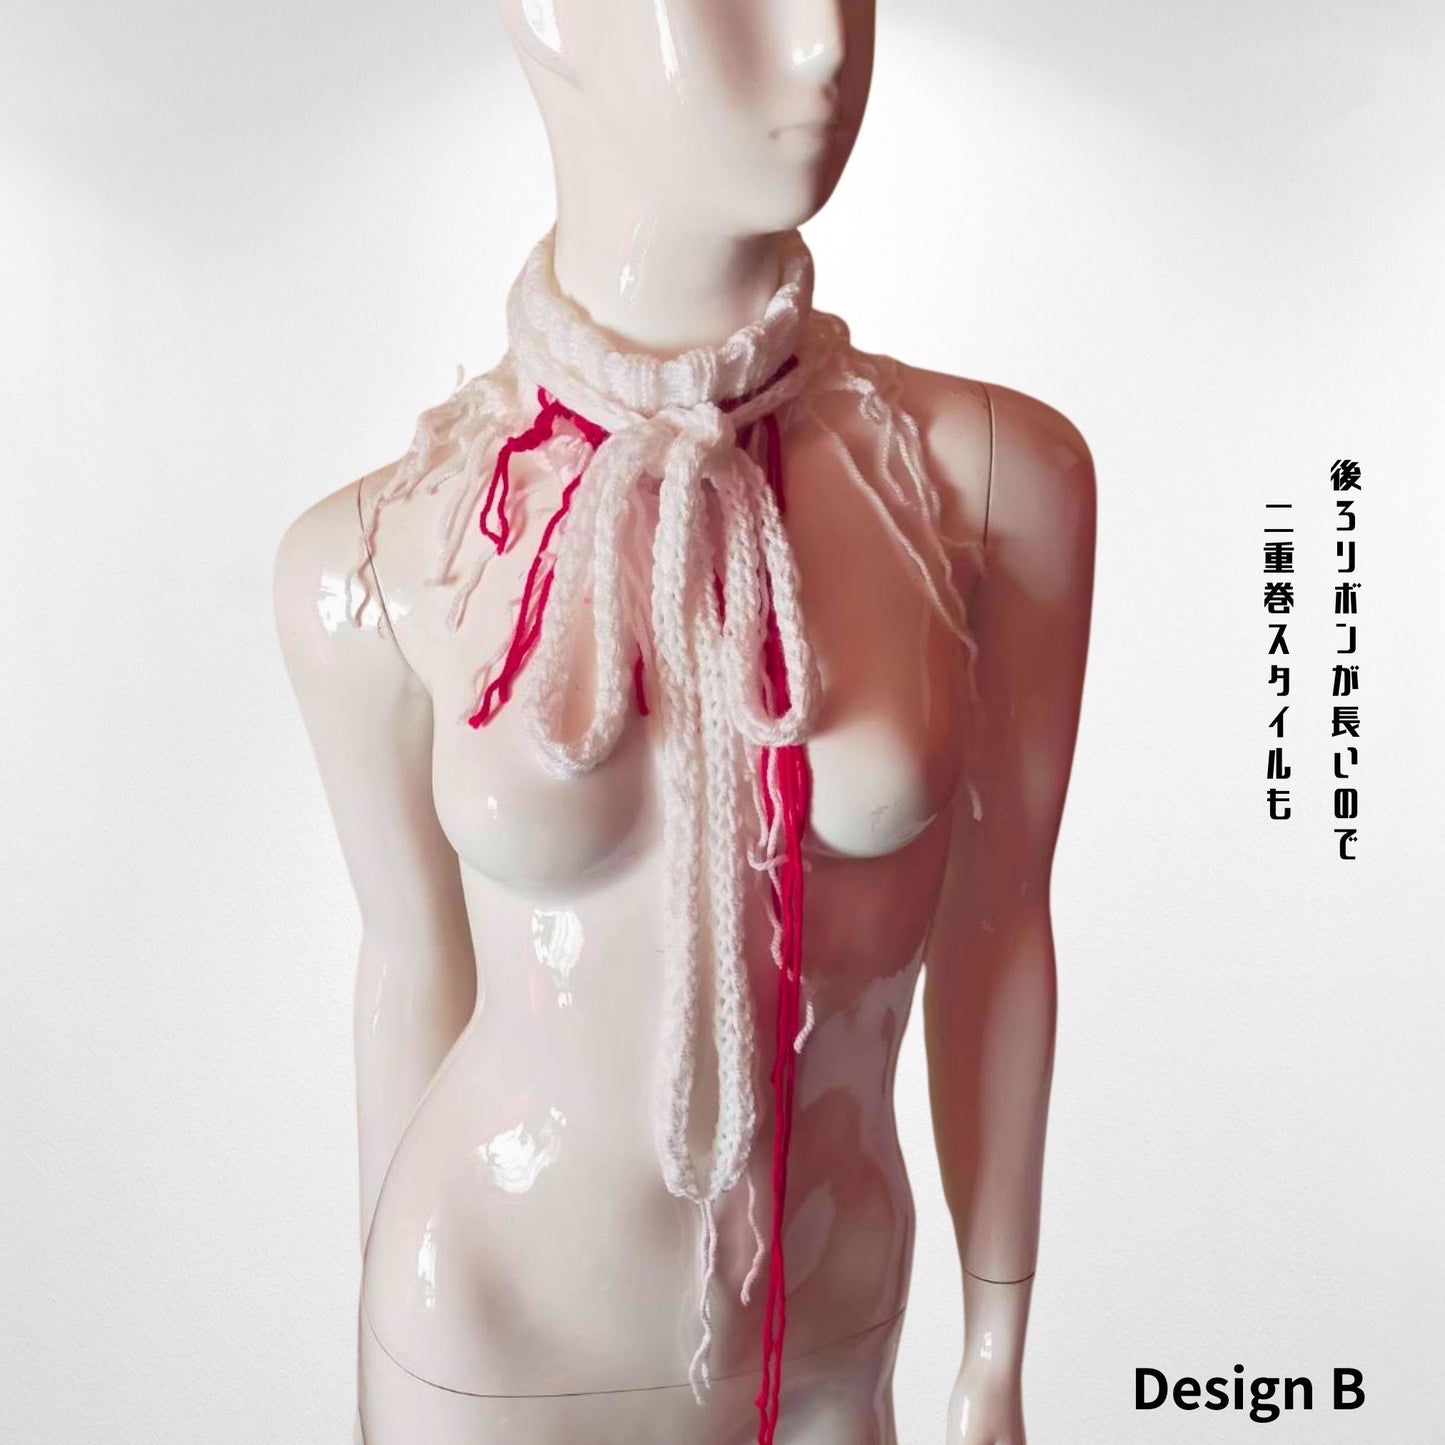 Red Drip " Handgefertigtes gestricktes Halsband-Halsaccessoire in weißem und rotem Design